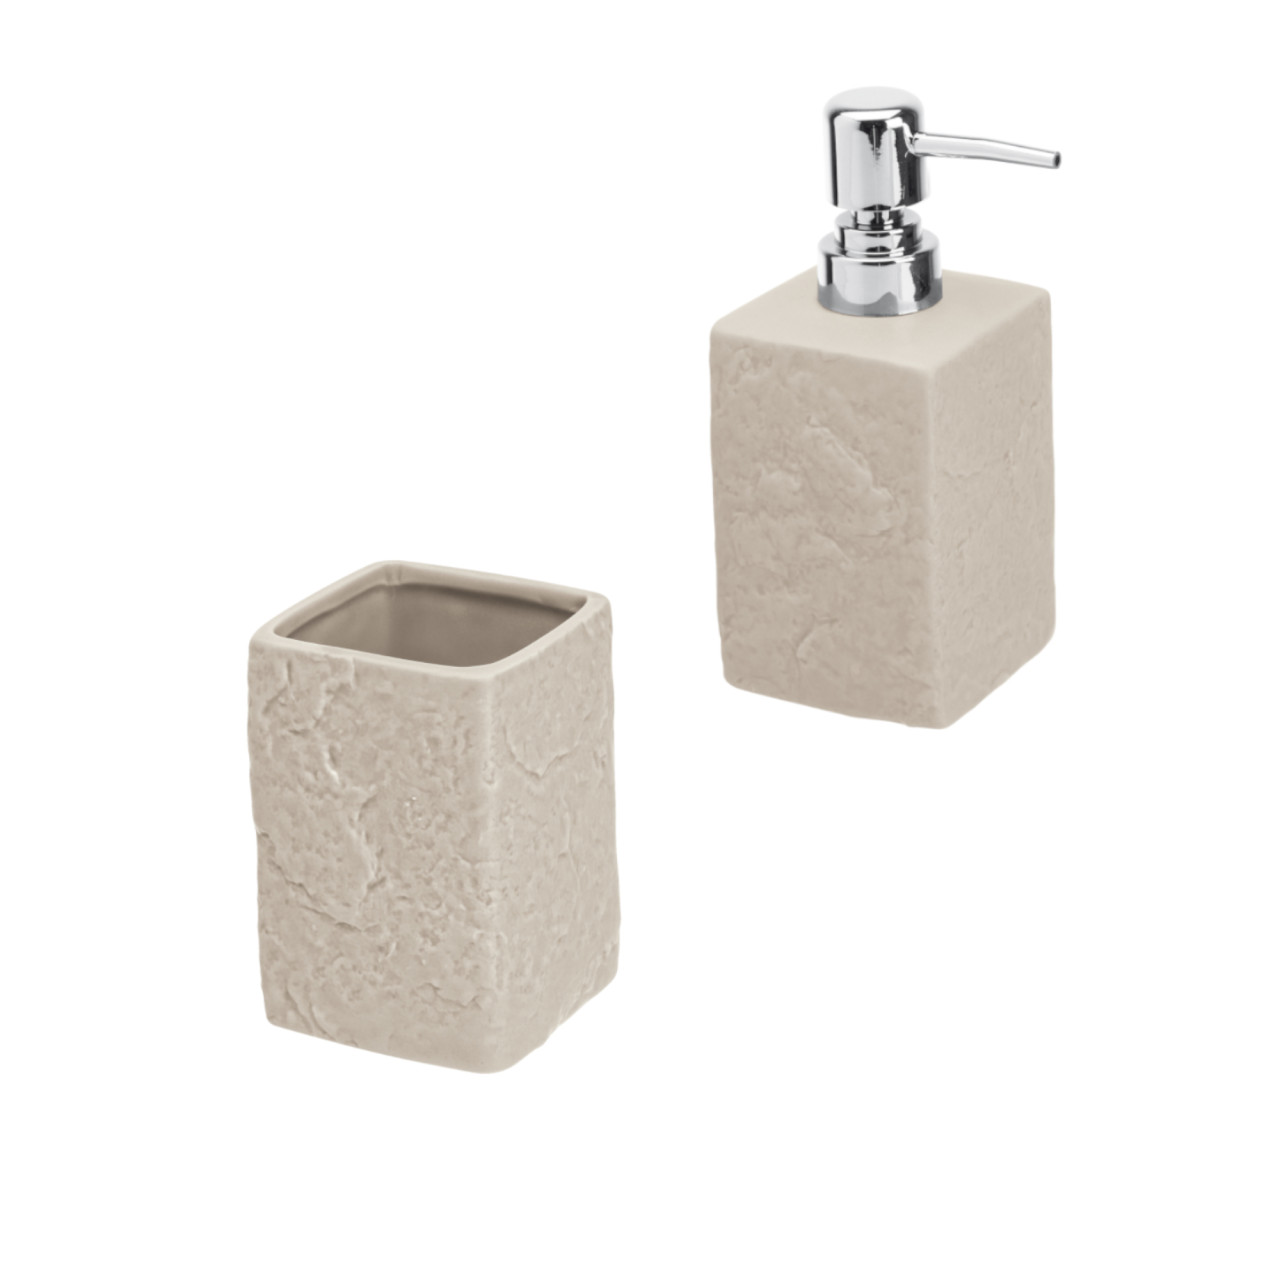 Set accessori bagno artep due pezzi beige effetto pietra con dispenser e portaspazzolini